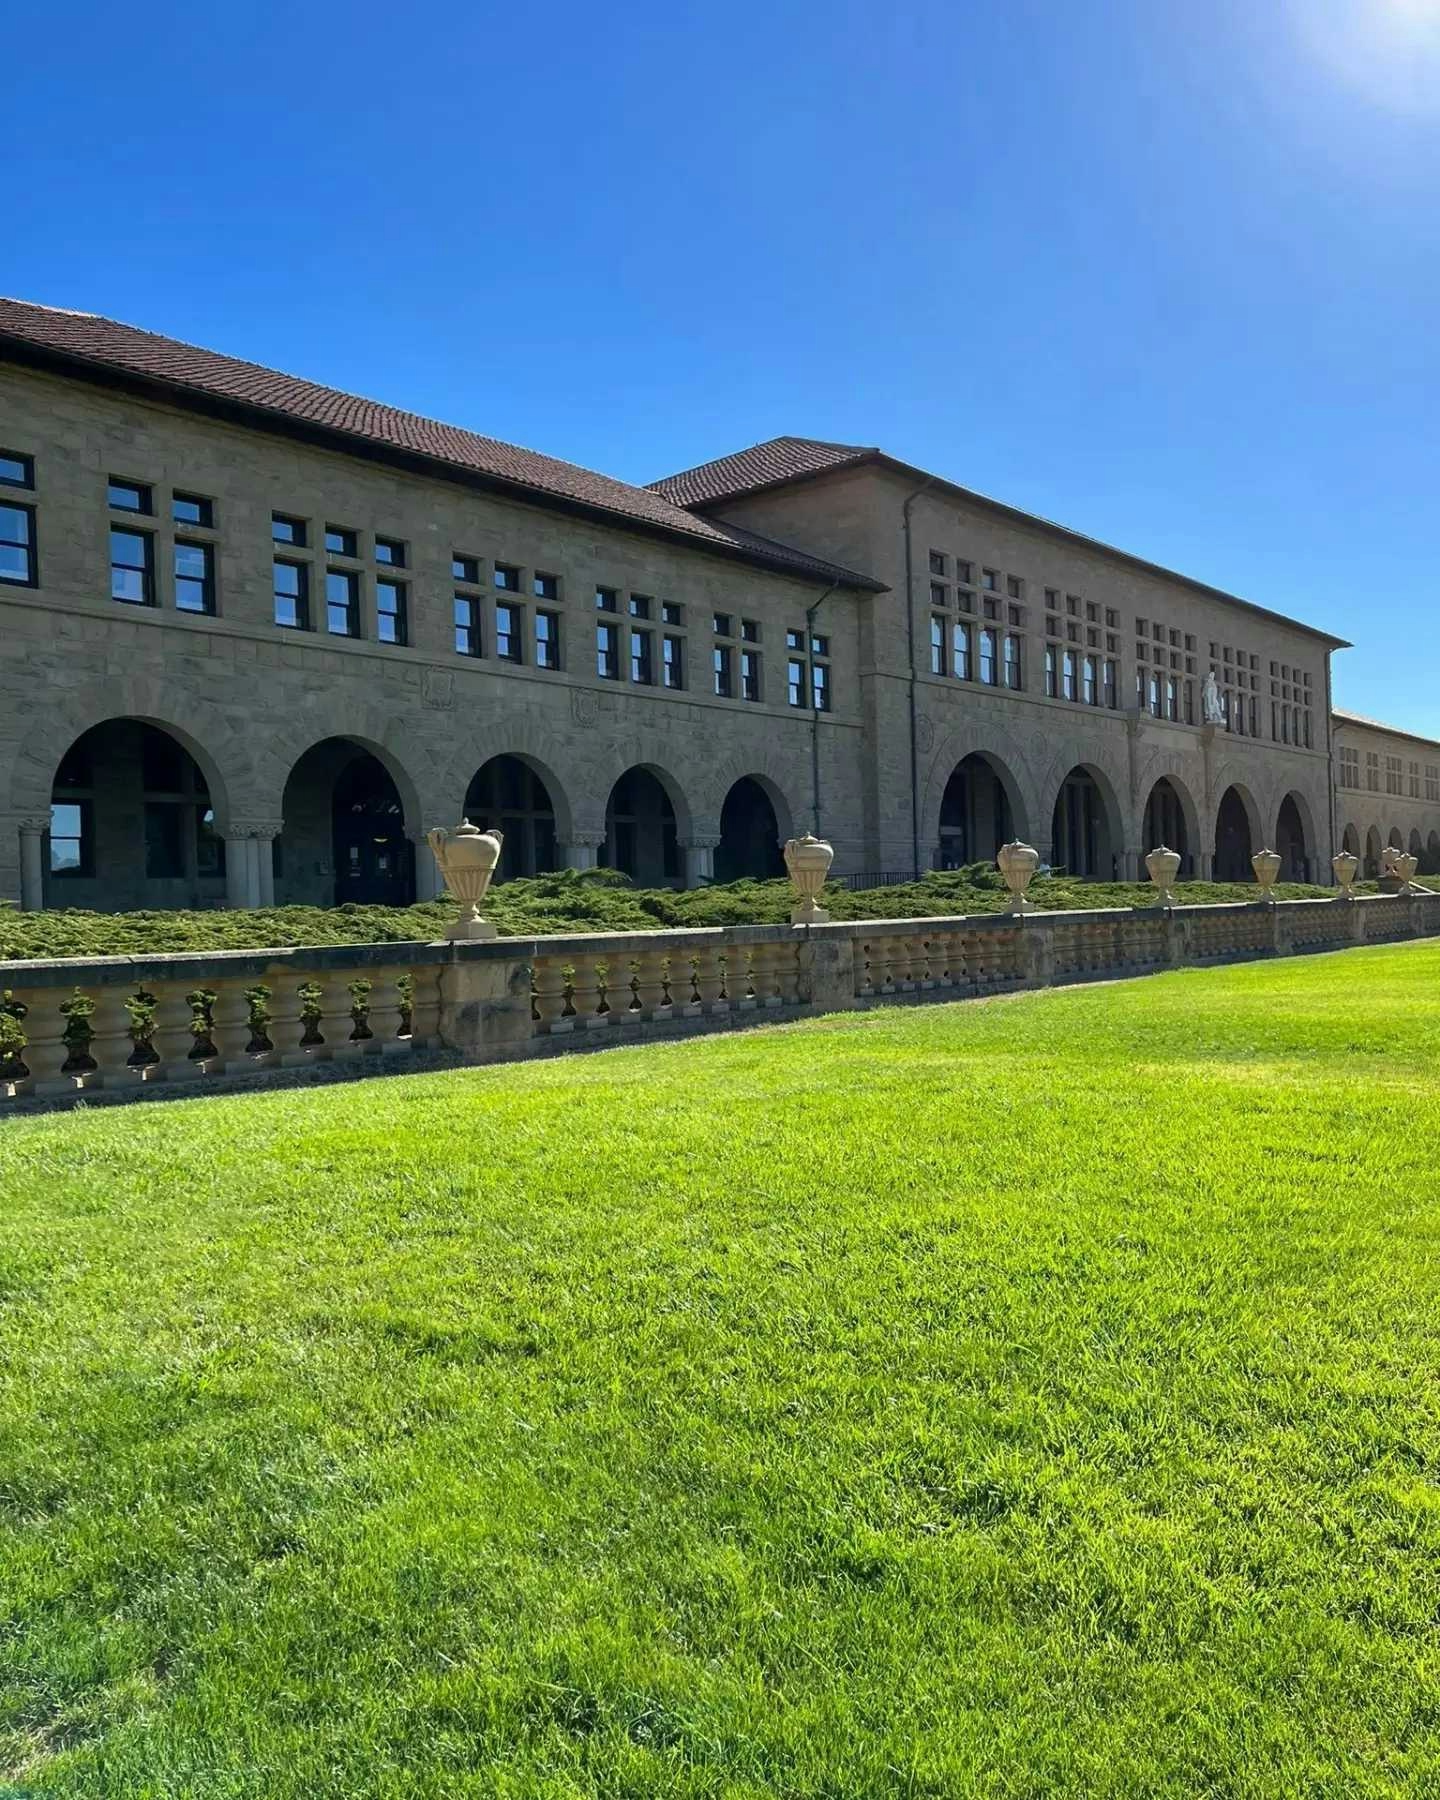 Stanford: CPO da Laborit faz imersivo no berço da inovação